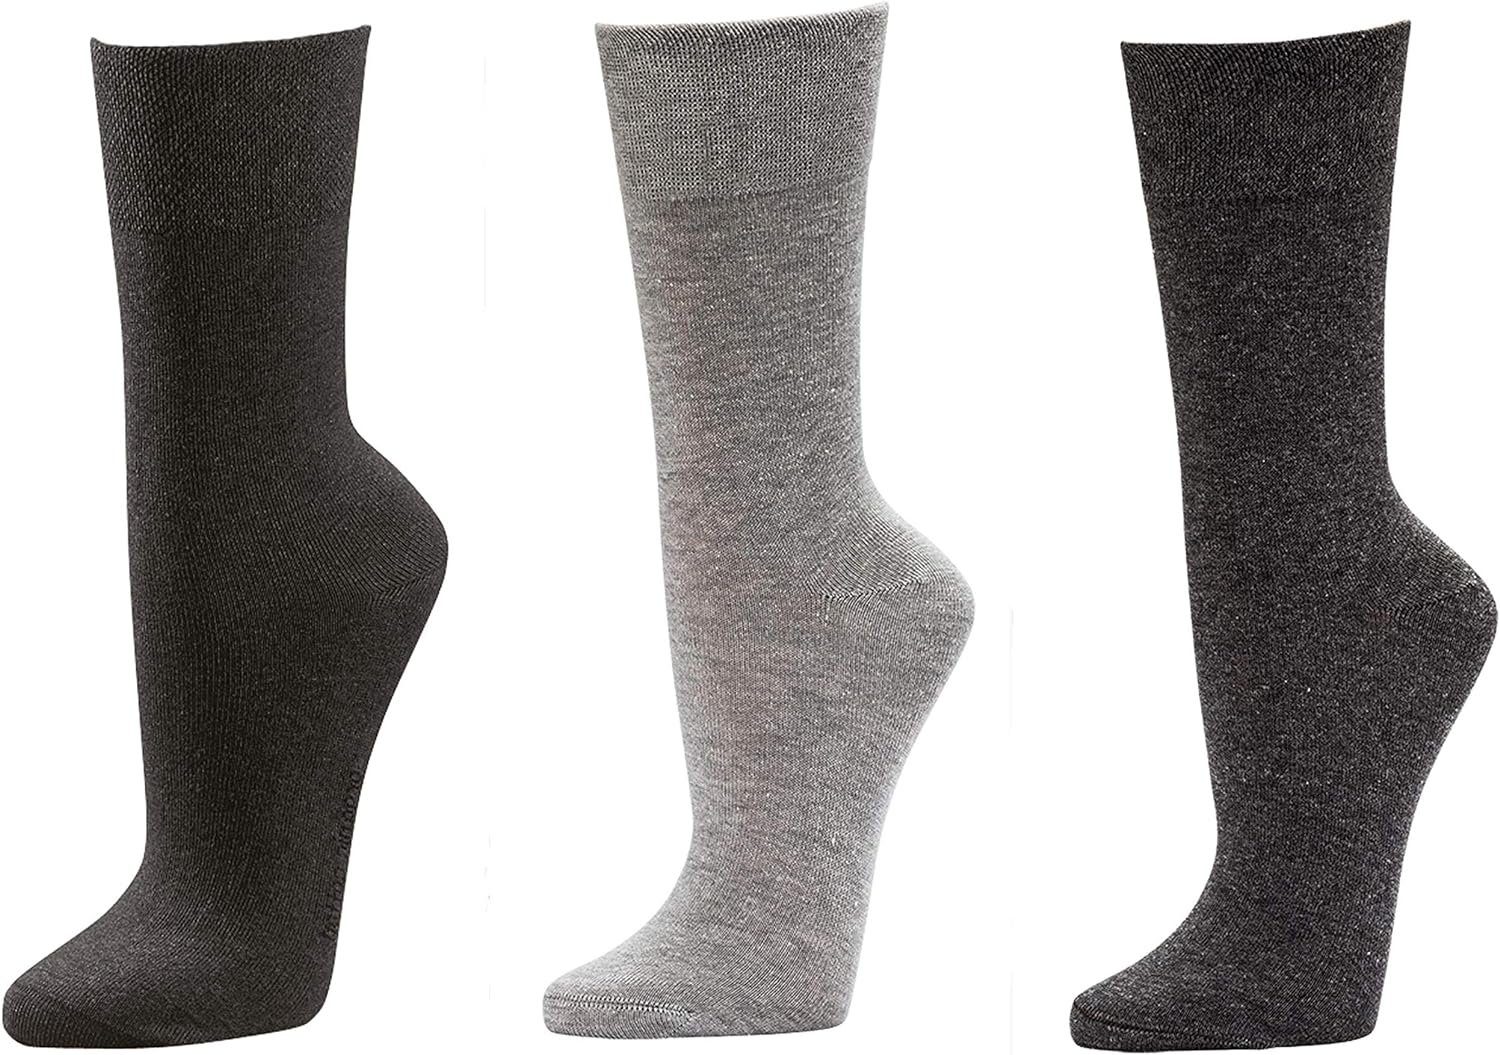 TippTexx 24 Businesssocken 3 Paar Socken GROßE GRÖßEN für GROßE Männer mit Antiloch-Garantie Schwarz/Grau/Anthrazit